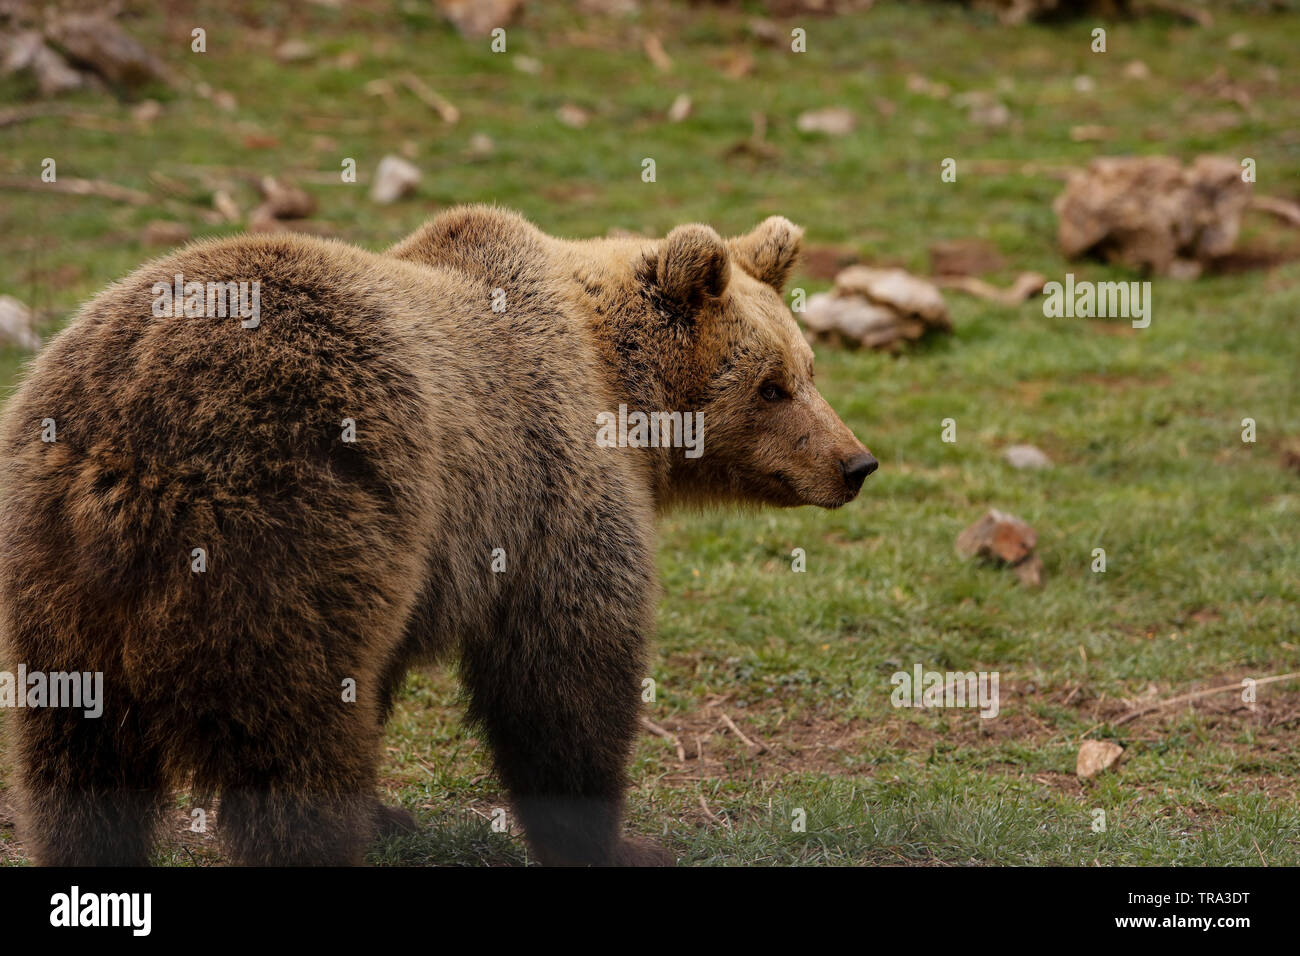 Europäische Bär (Ursus arctos) Essen, in der Ortschaft Kutarevo, in der Nähe von Gospic, Kroatien. Samstag, April 4, 2015 Stockfoto